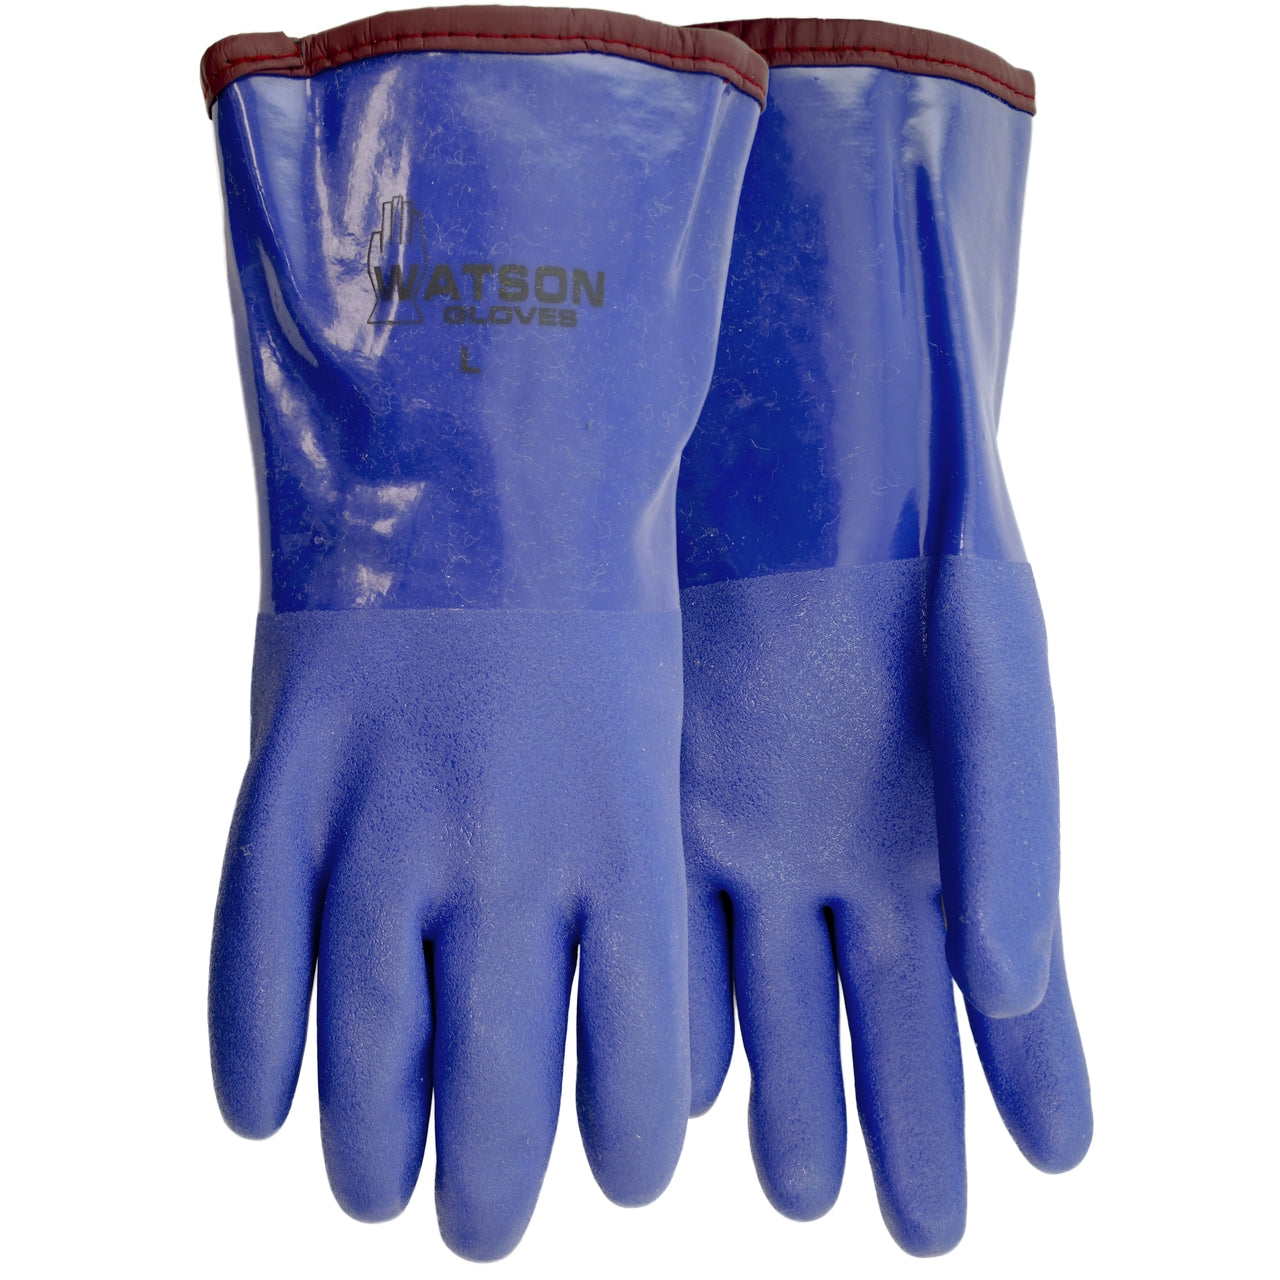 Watson 491 - Frost Free Gauntlet Fleece Lined gloves